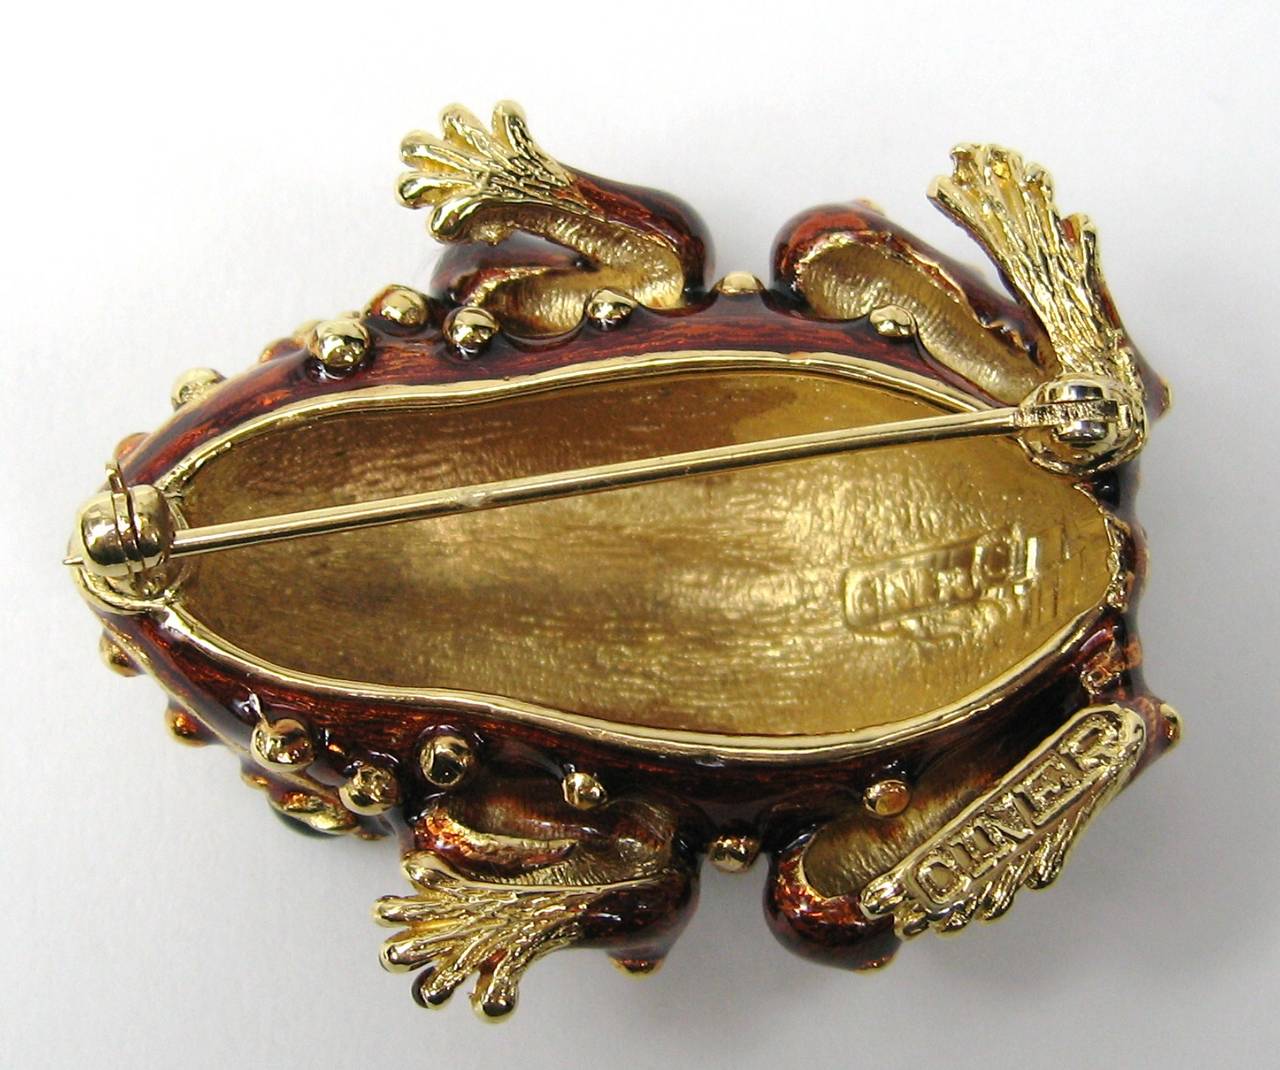 swarovski frog brooch